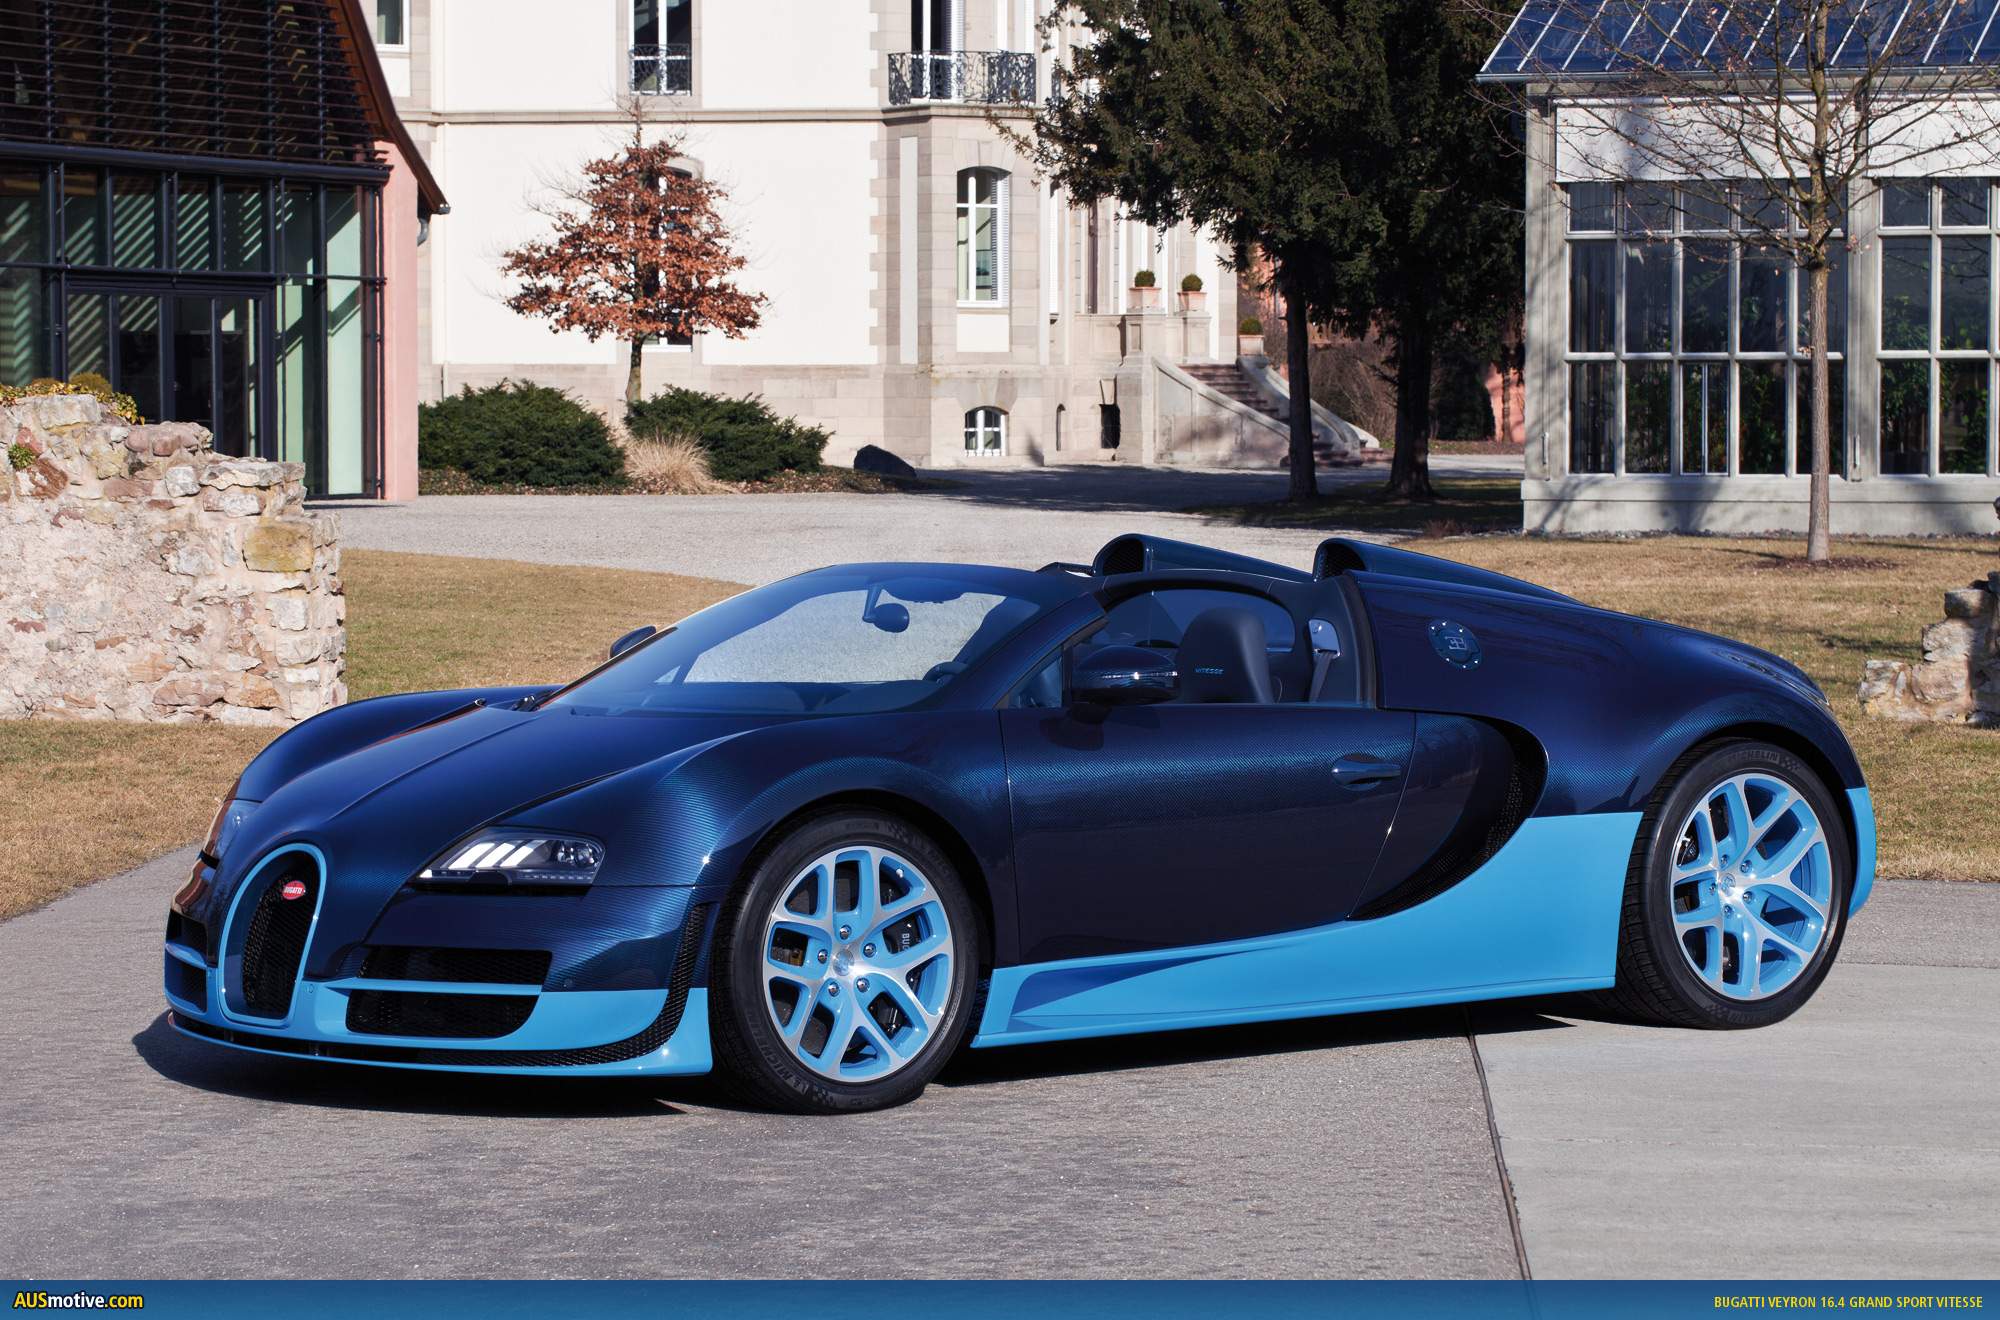 Bugatti Veyron 16 4 Grand Sport Vitesse